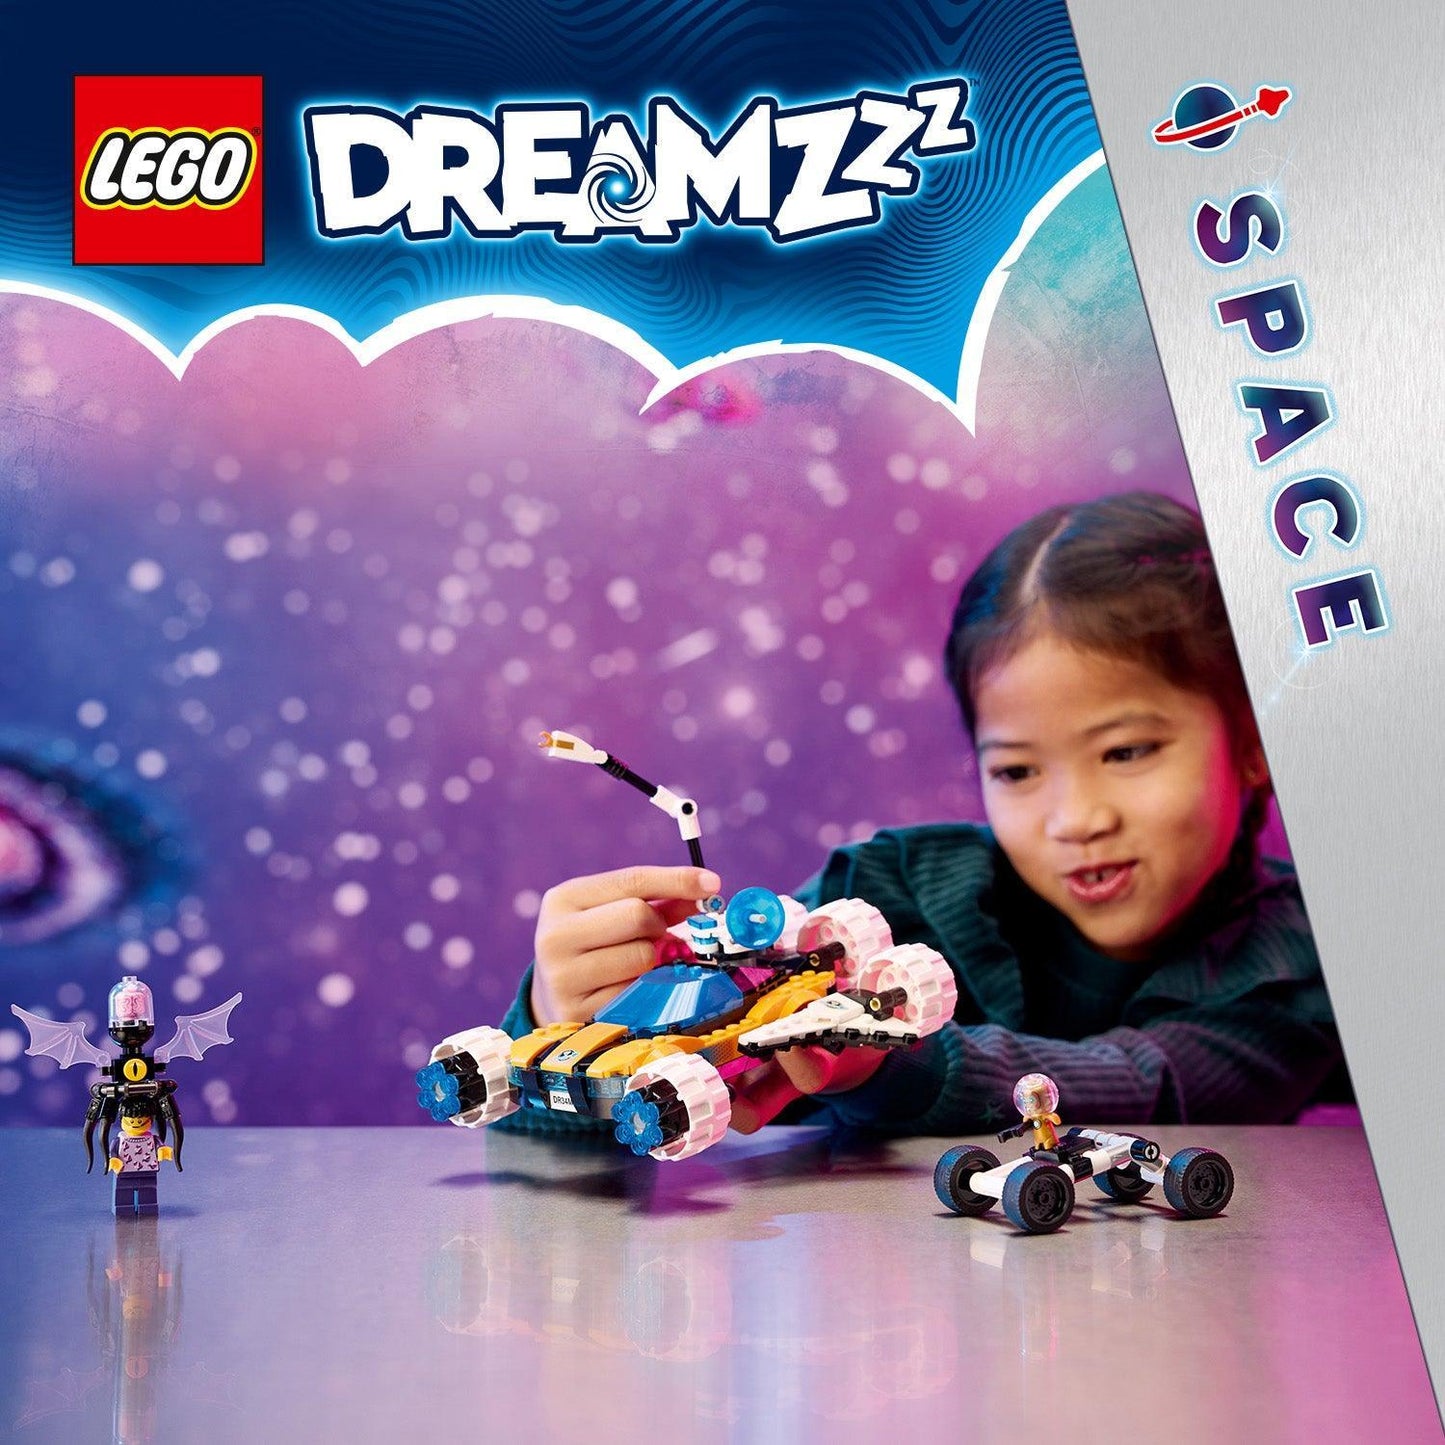 LEGO Mr. Oz's Space Auto 71475 Dreamzzz | 2TTOYS ✓ Official shop<br>